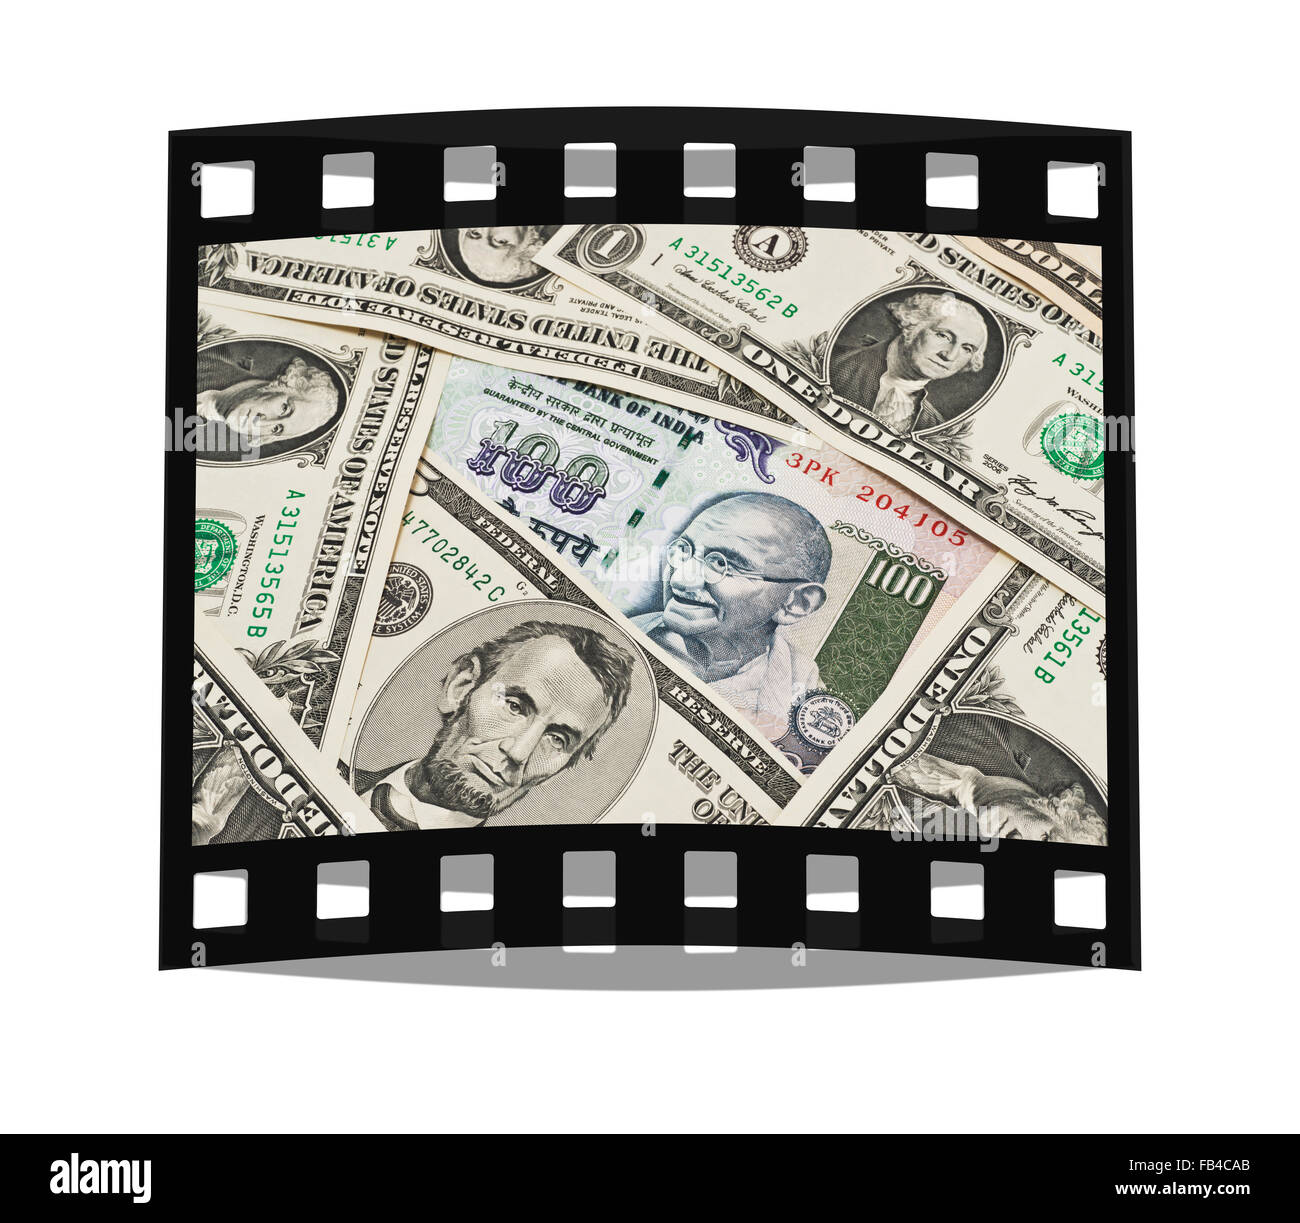 Viele US-Dollarnoten nebeneinander liegen. In der Mitte befindet sich eine Rechnung indischen 100 Rupien mit dem Porträt von Mahatma Gandhi Stockfoto